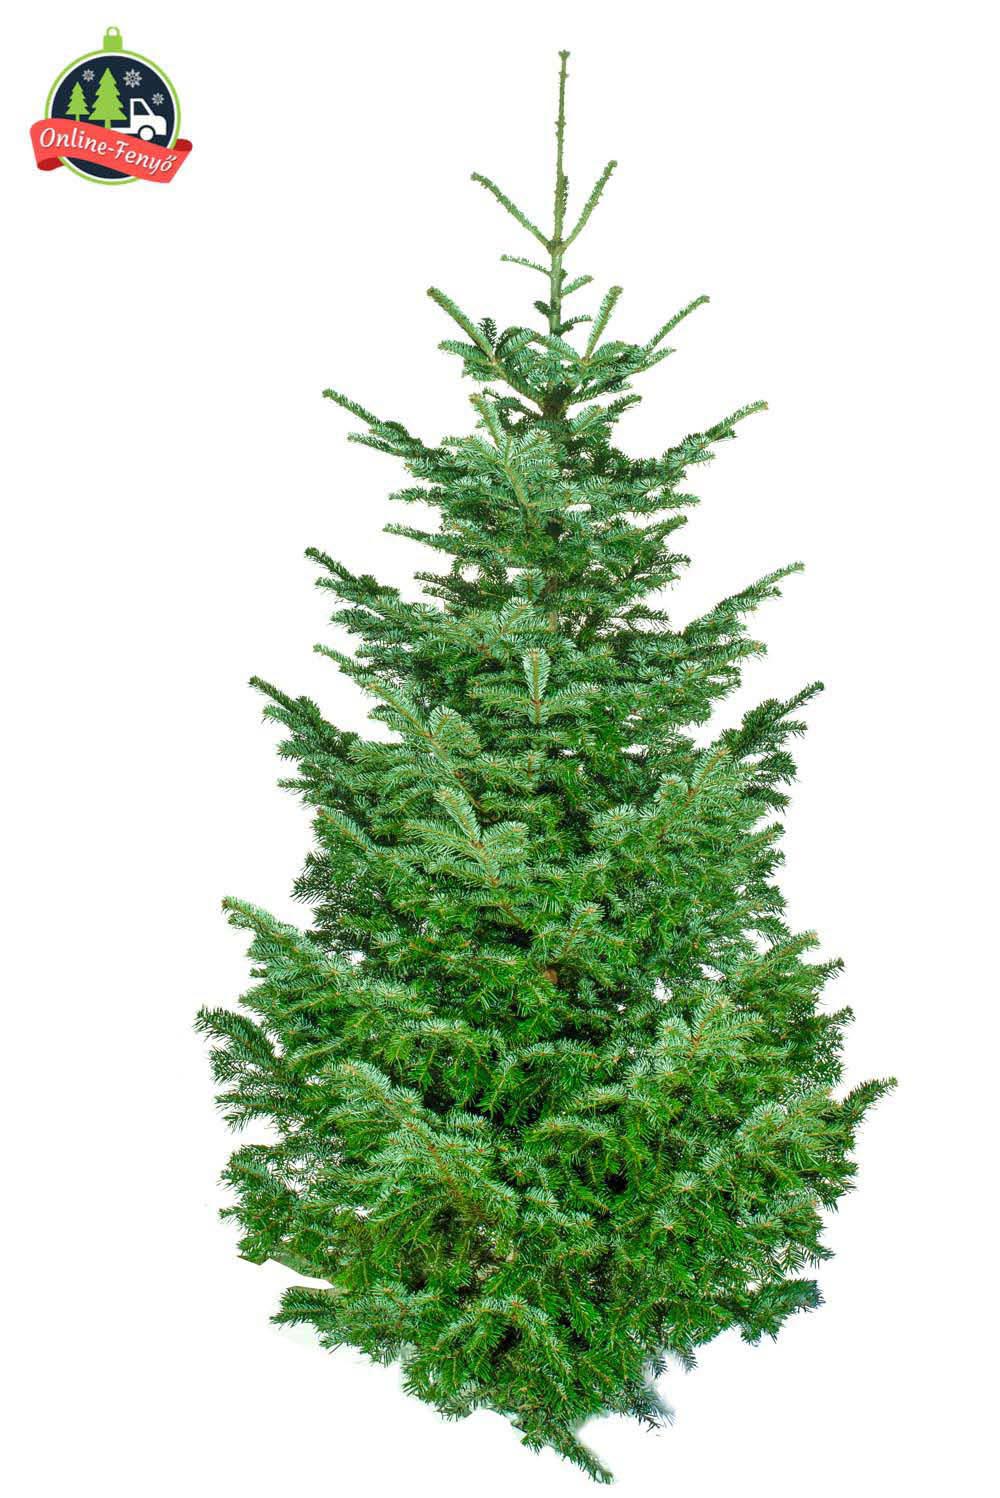 Cégek, üzletek számára 4, 5 méteres nordmann karácsonyfa